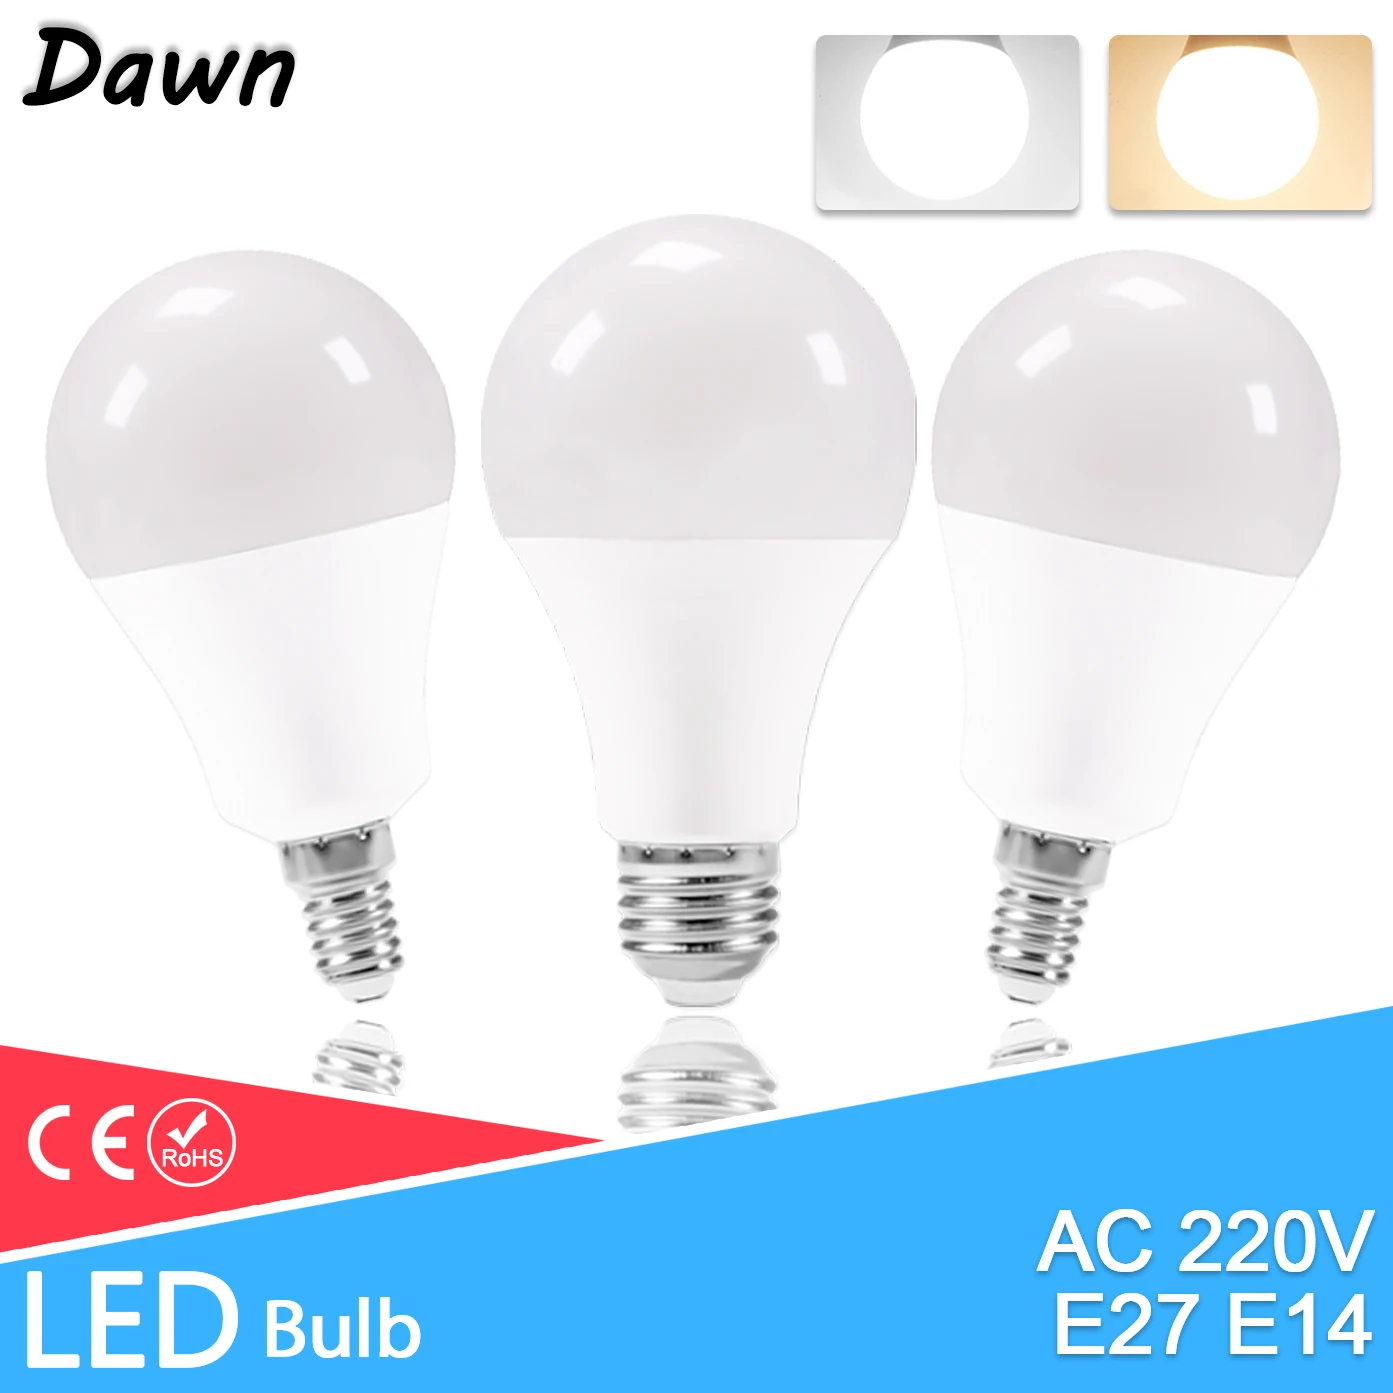 

LED E27 E14 Bulb Lamps 220V High Brightness Light Bulb 24W 20W 18W 15W 12W 9W 5W 3W LED E14 Warm White Cold White